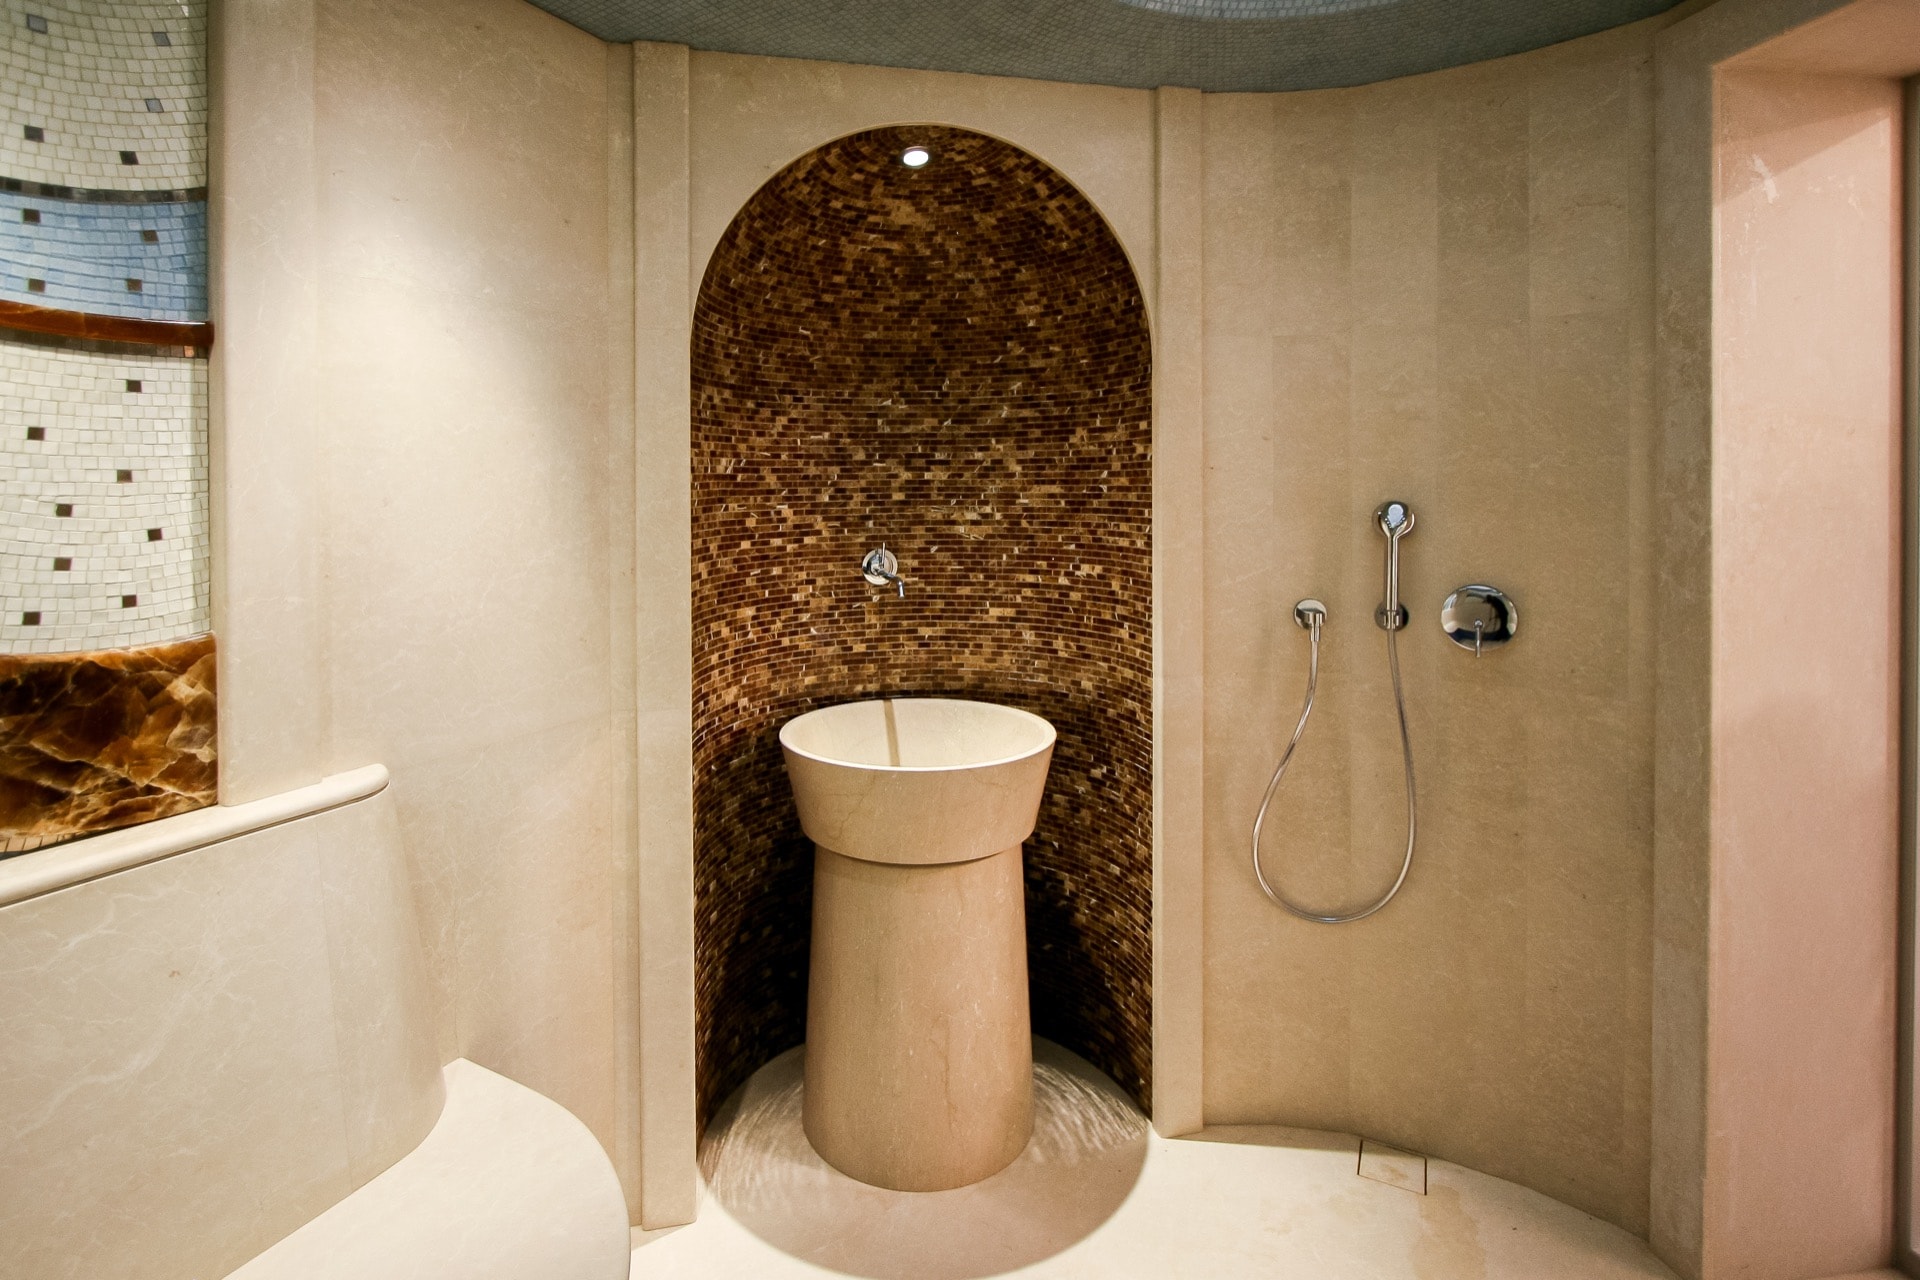 Курна в терцкой бане (хамам) с отделкой из мрамора, мозаики и оникса в каменном доме